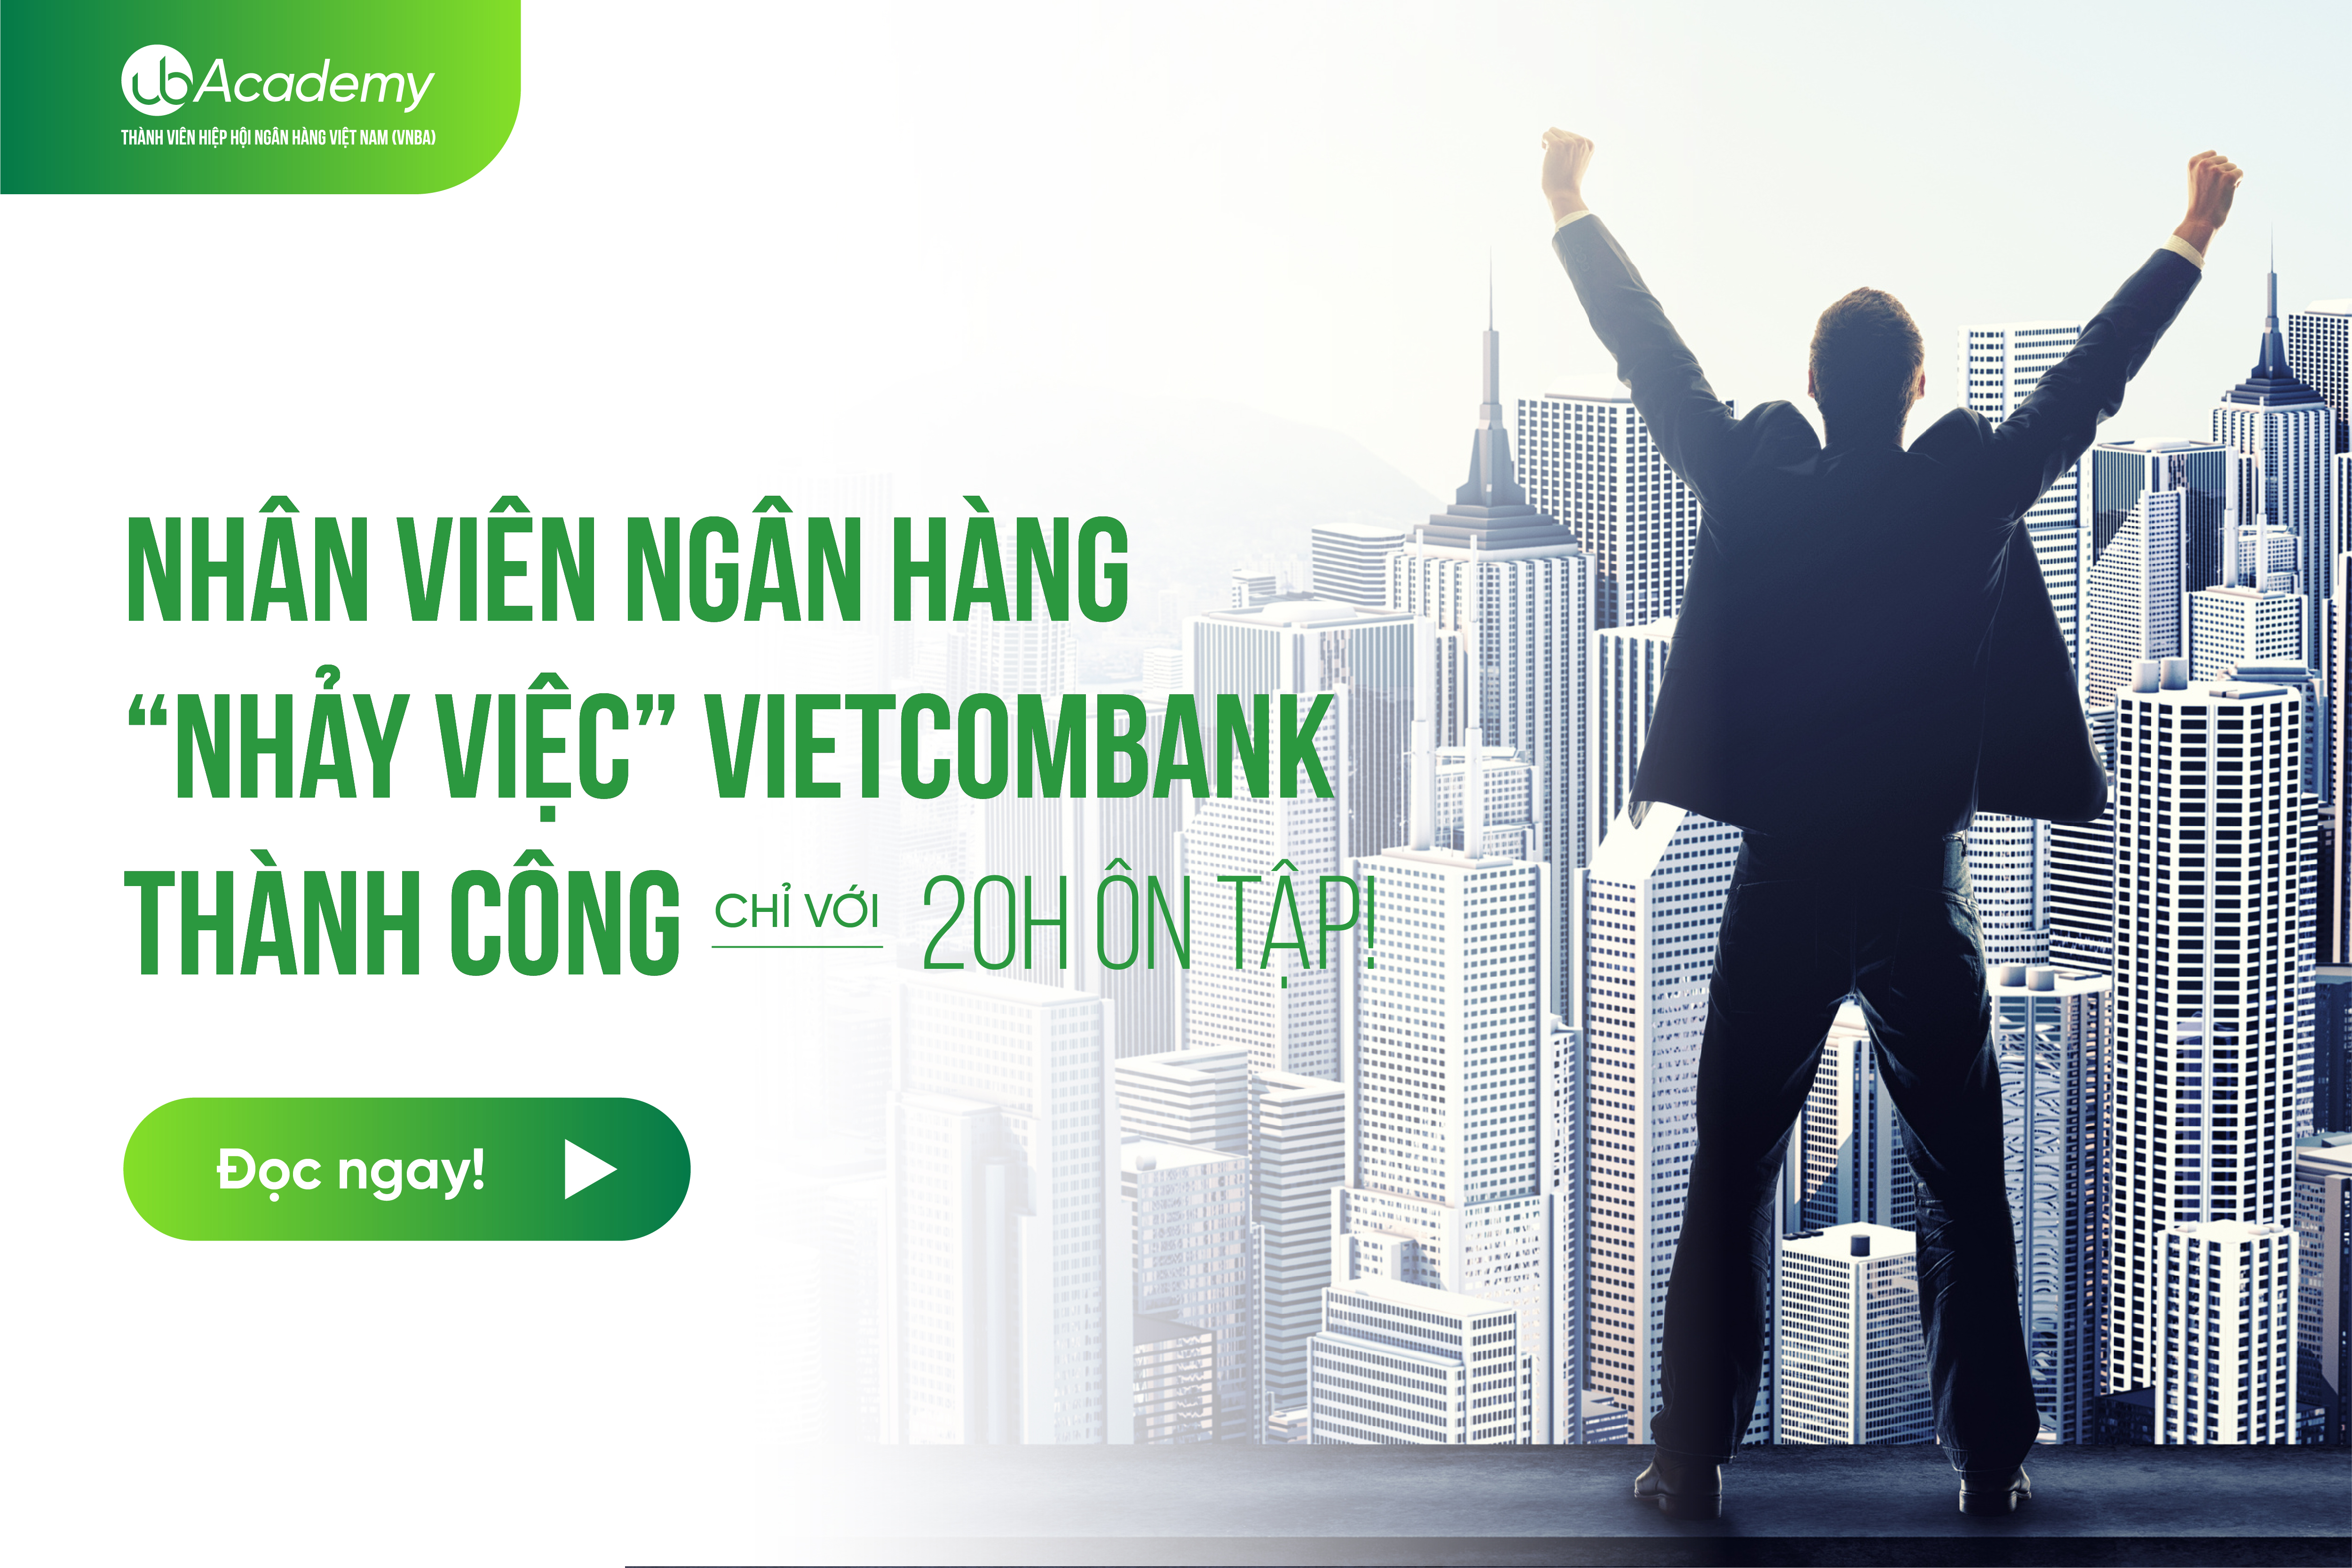 Nhân viên Ngân hàng ‘nhảy việc’ Vietcombank thành công chỉ với 20h ôn tập! 